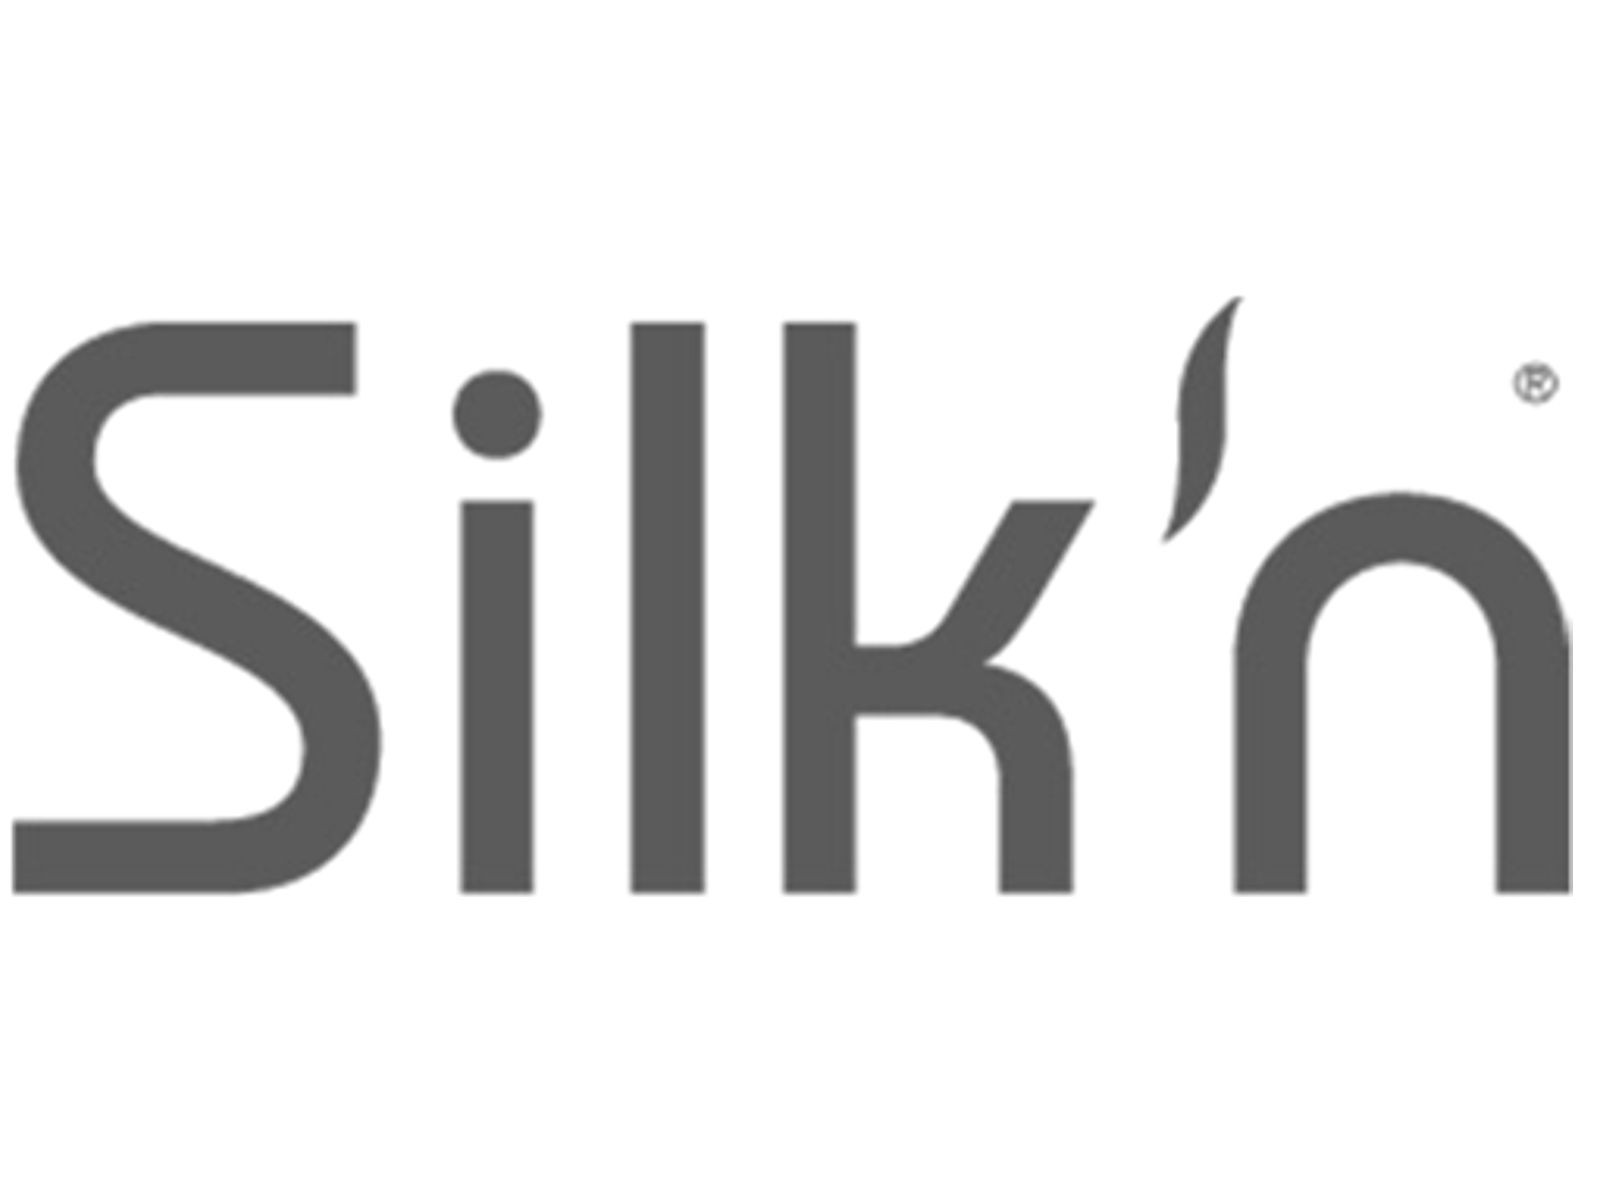 Silkn